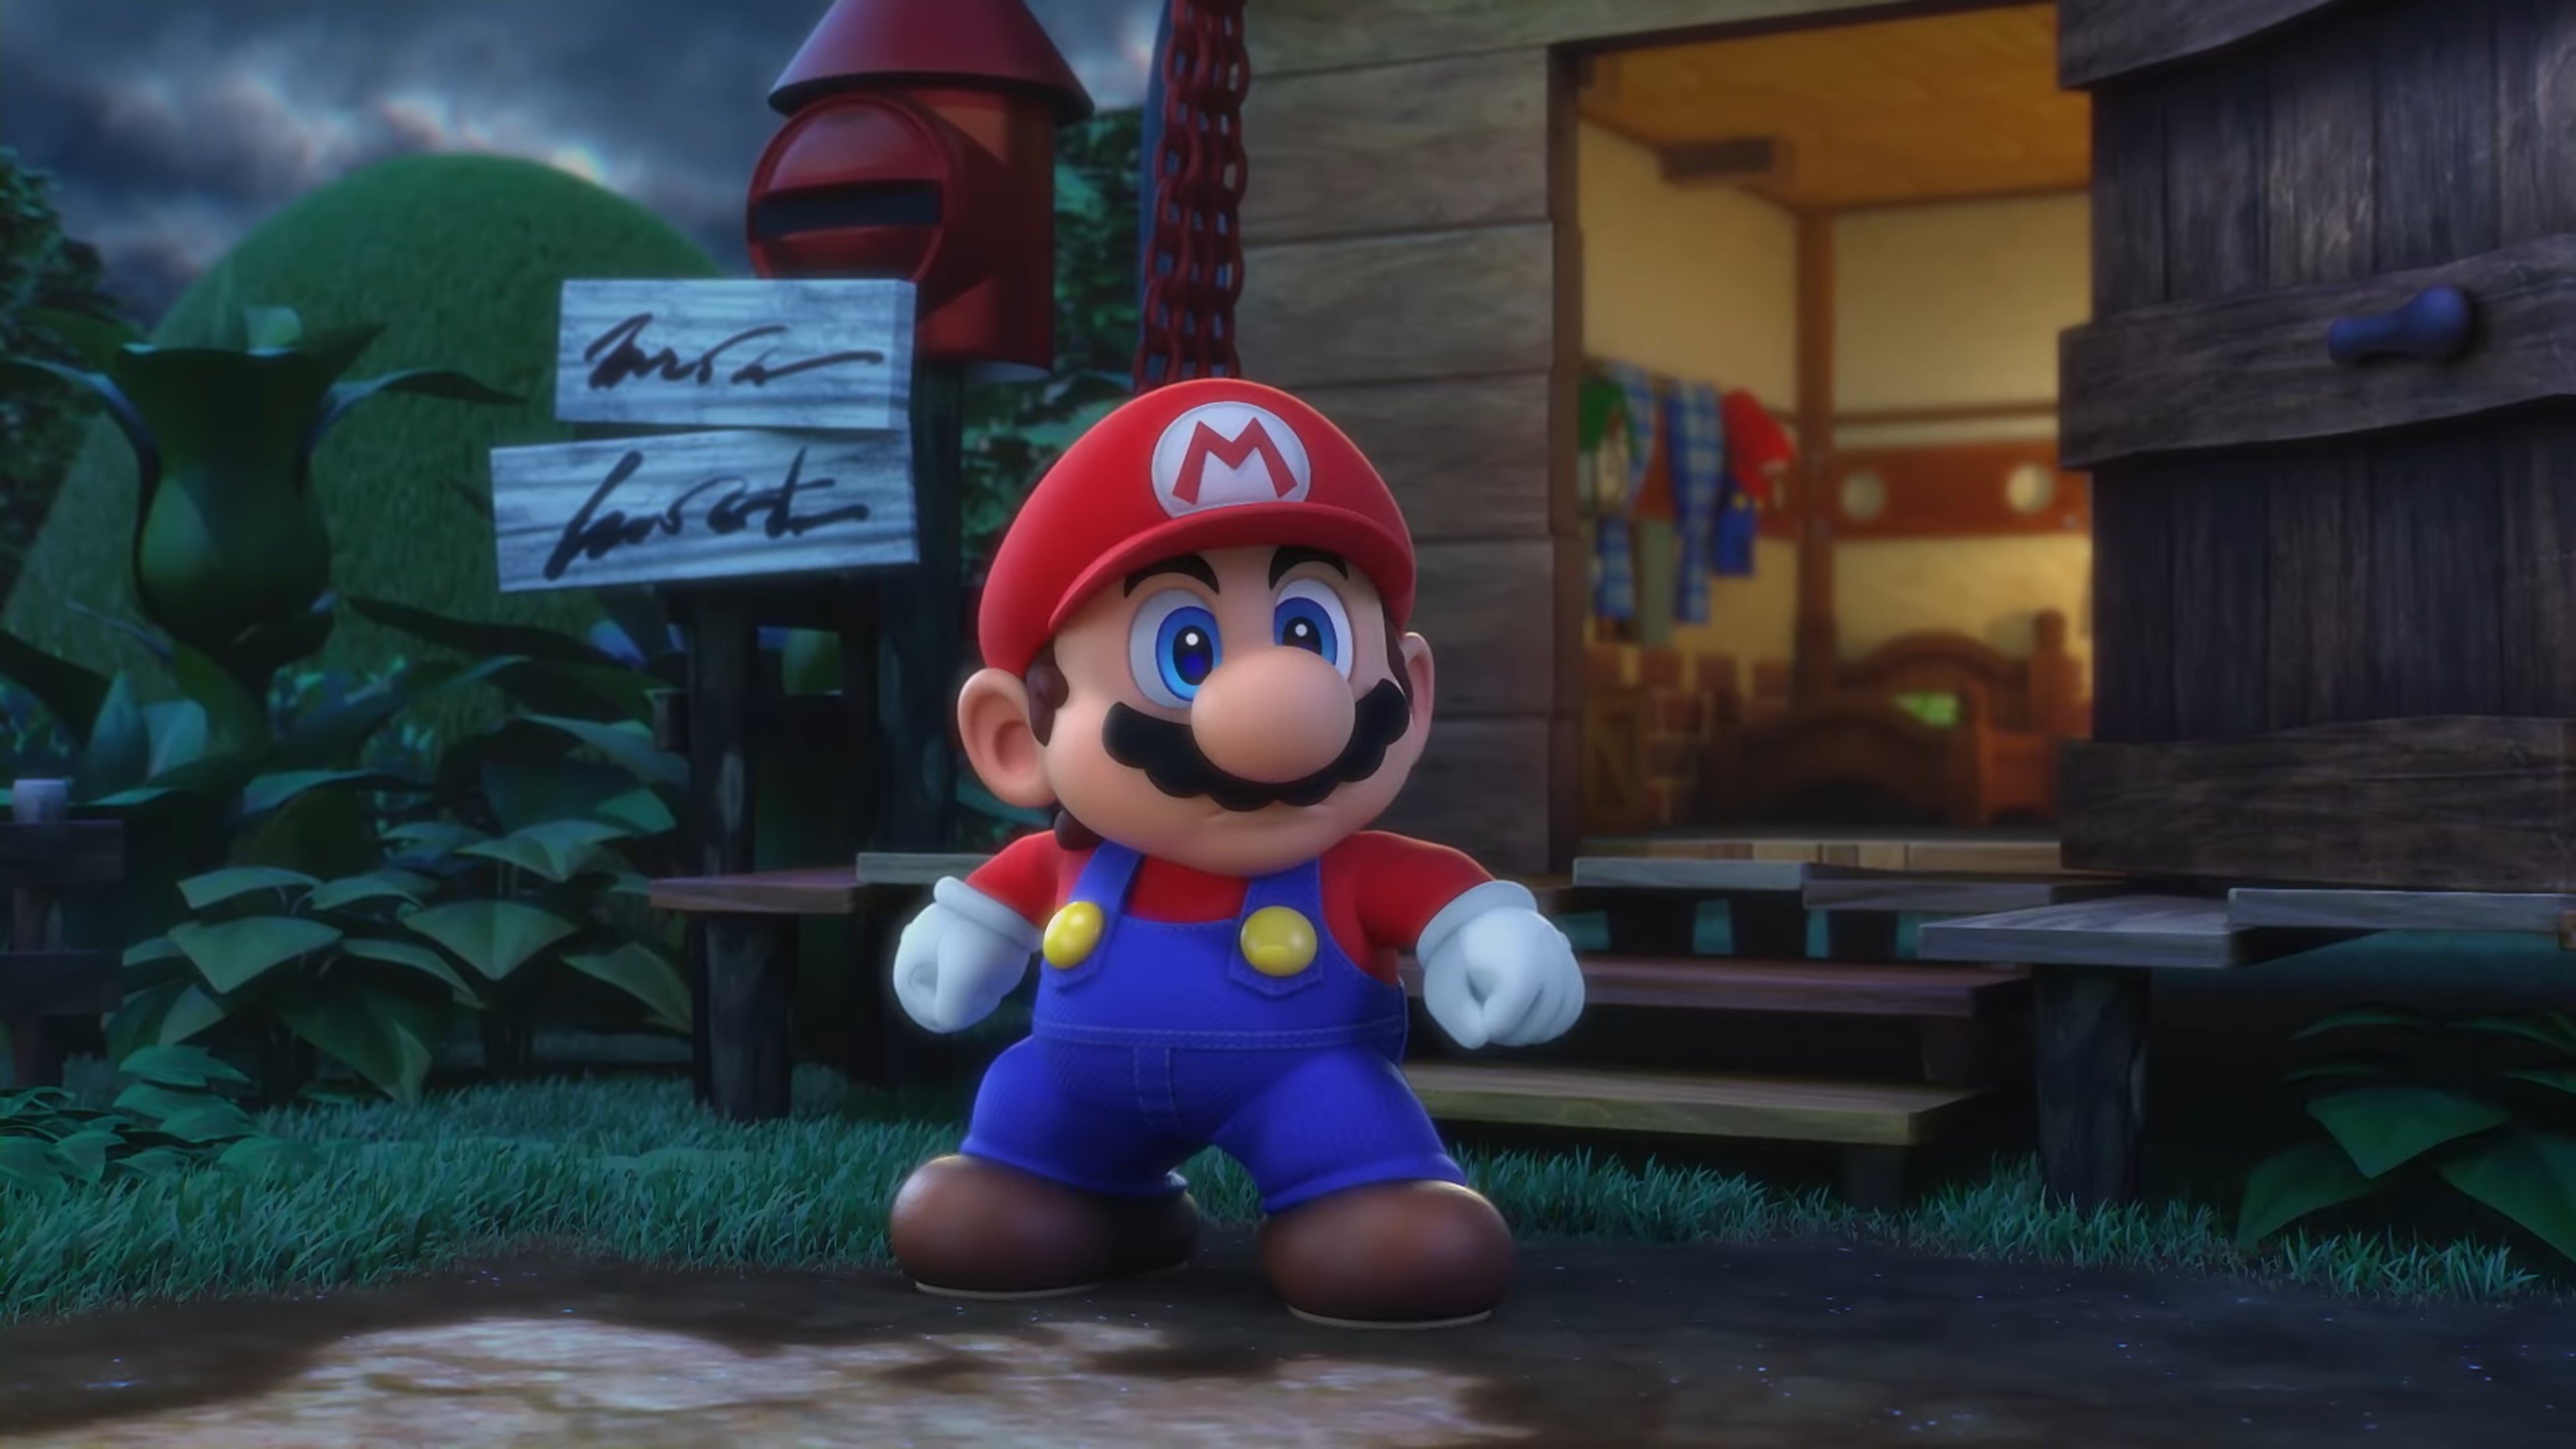 La primera reseña de Super Mario RPG ha sido publicada en Famitsu